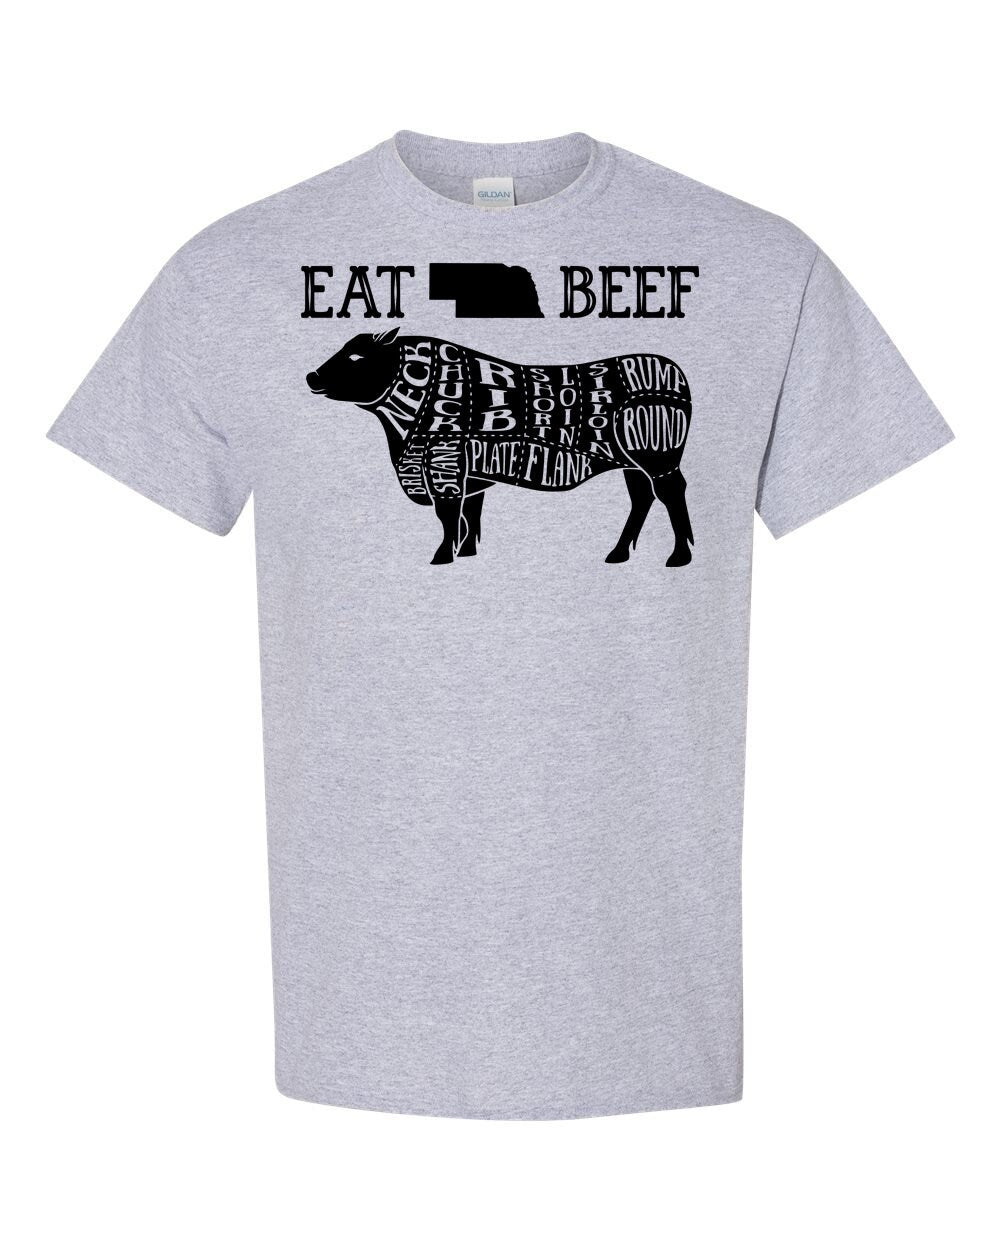 Eat Nebraska Beef Download - 1